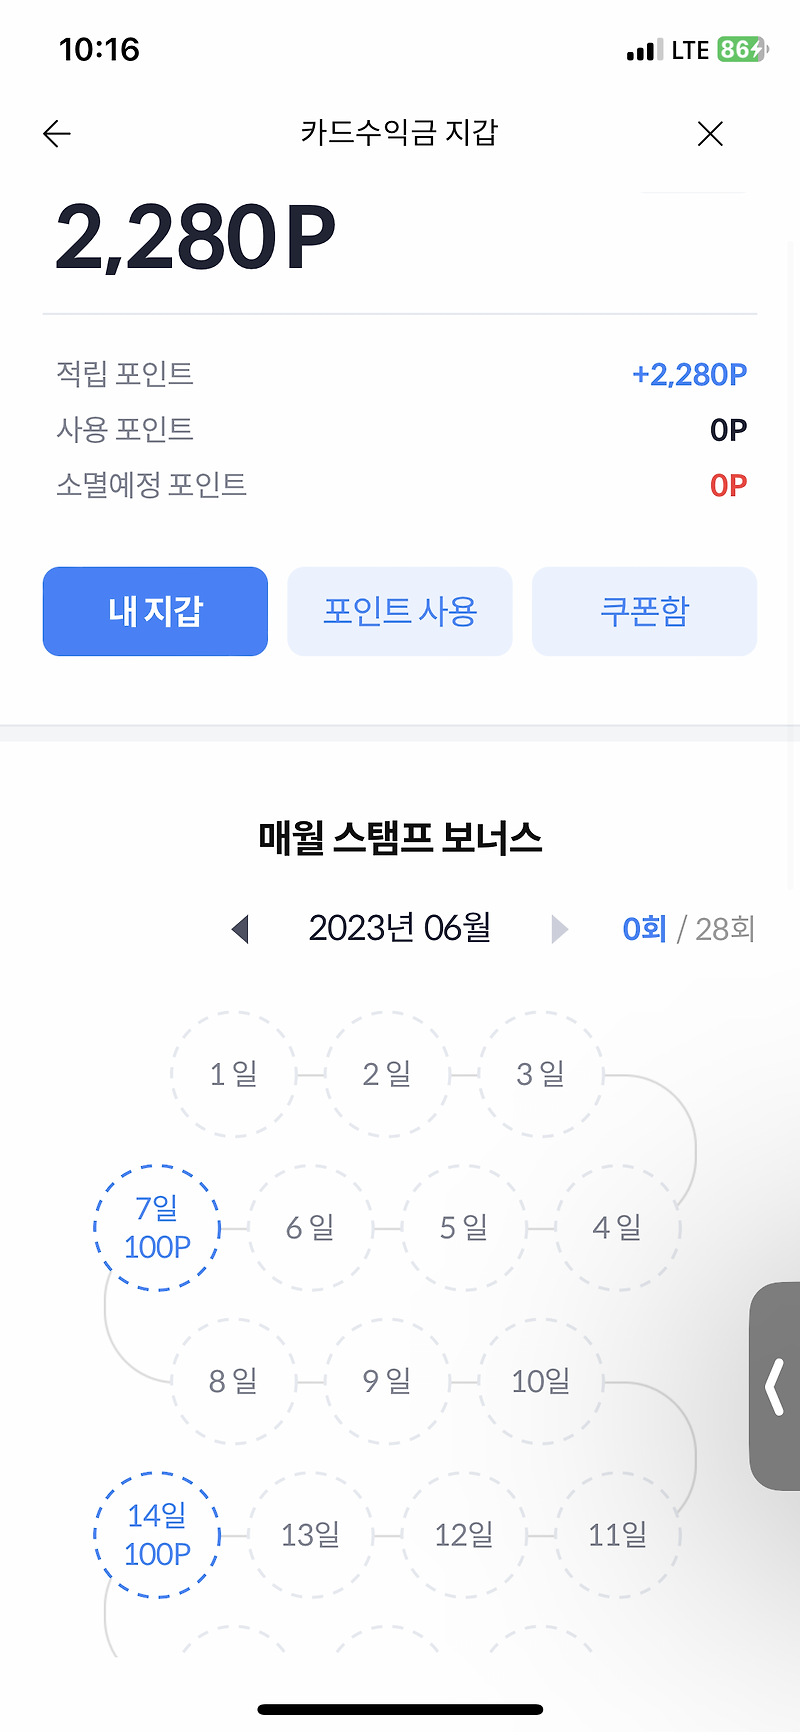 카드관리 앱 더쎈카드 소개(추천인 코드: gWvLRUre)